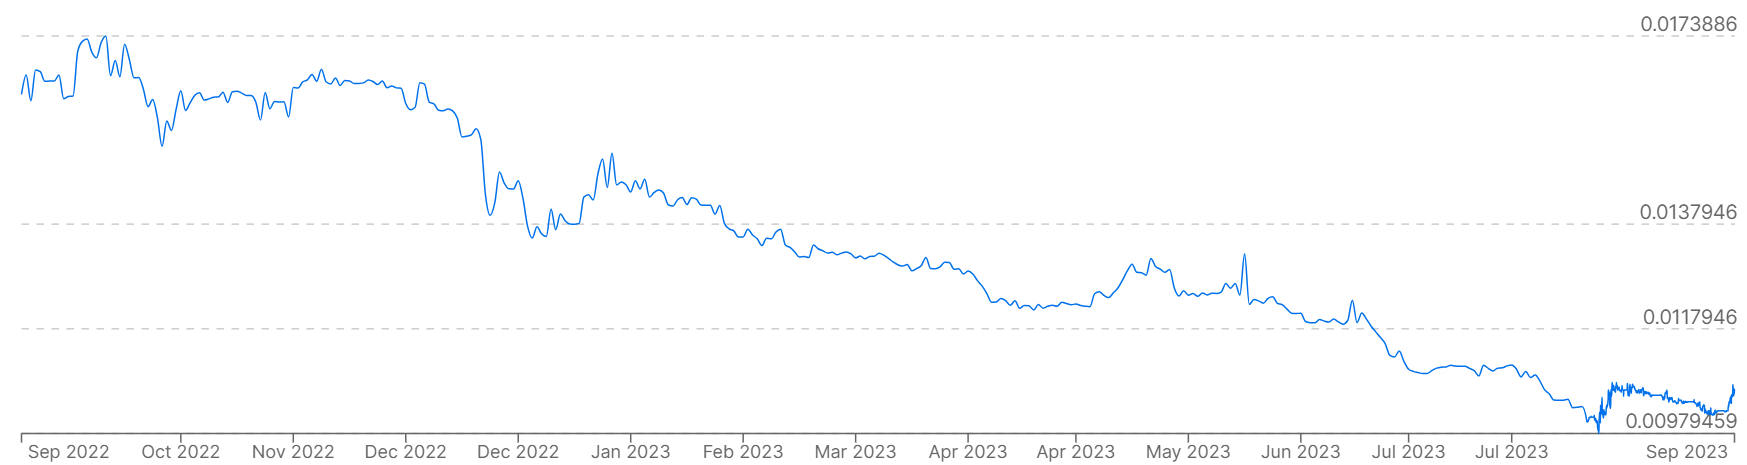 Un gráfico que muestra los precios del rublo frente a los precios del dólar durante los últimos 12 meses.